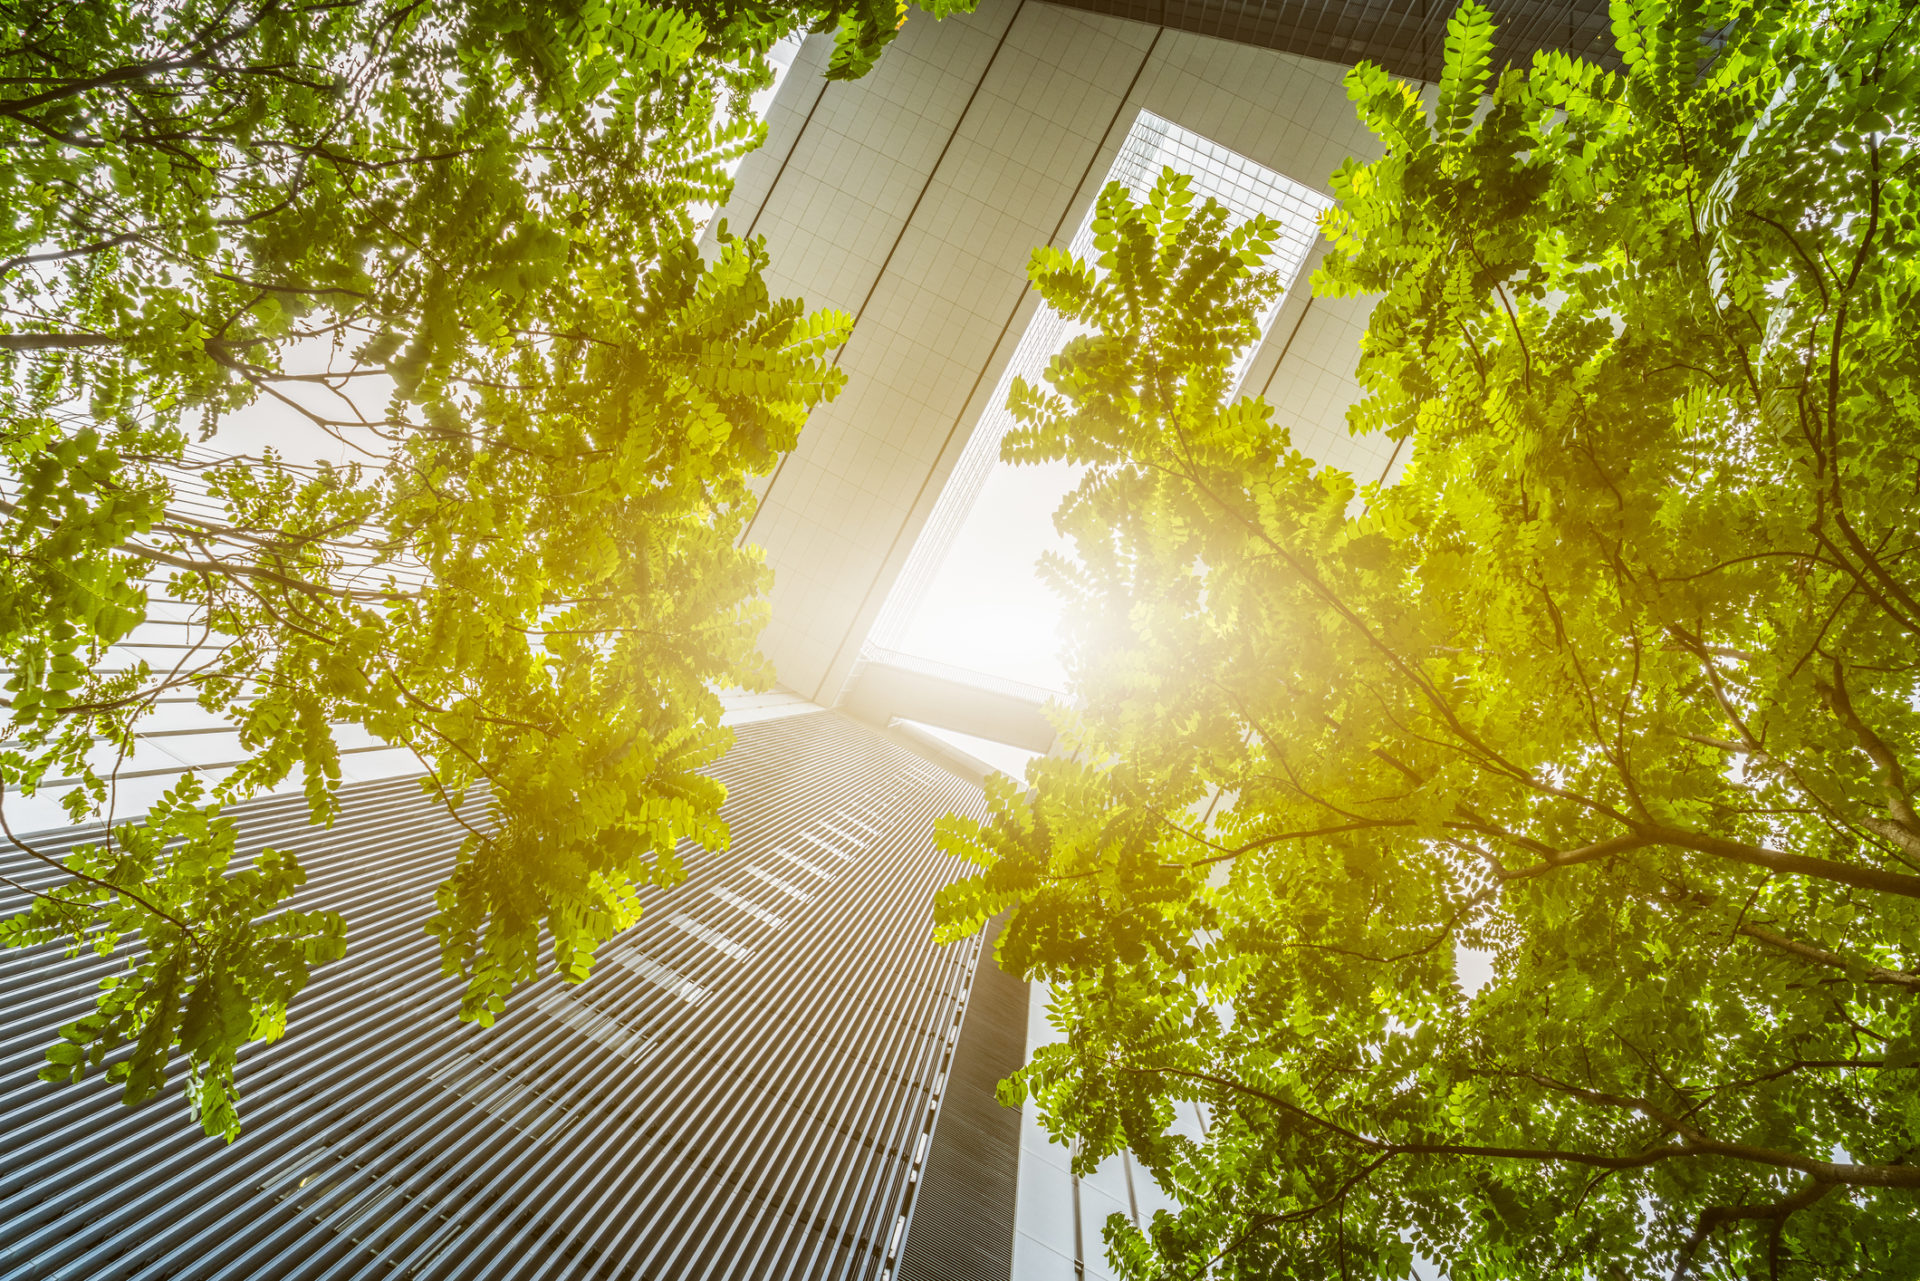 Perspectiva de baixo para cima de prédios espelhados com árvores e raio solar, alusivo aos investimentos ESG